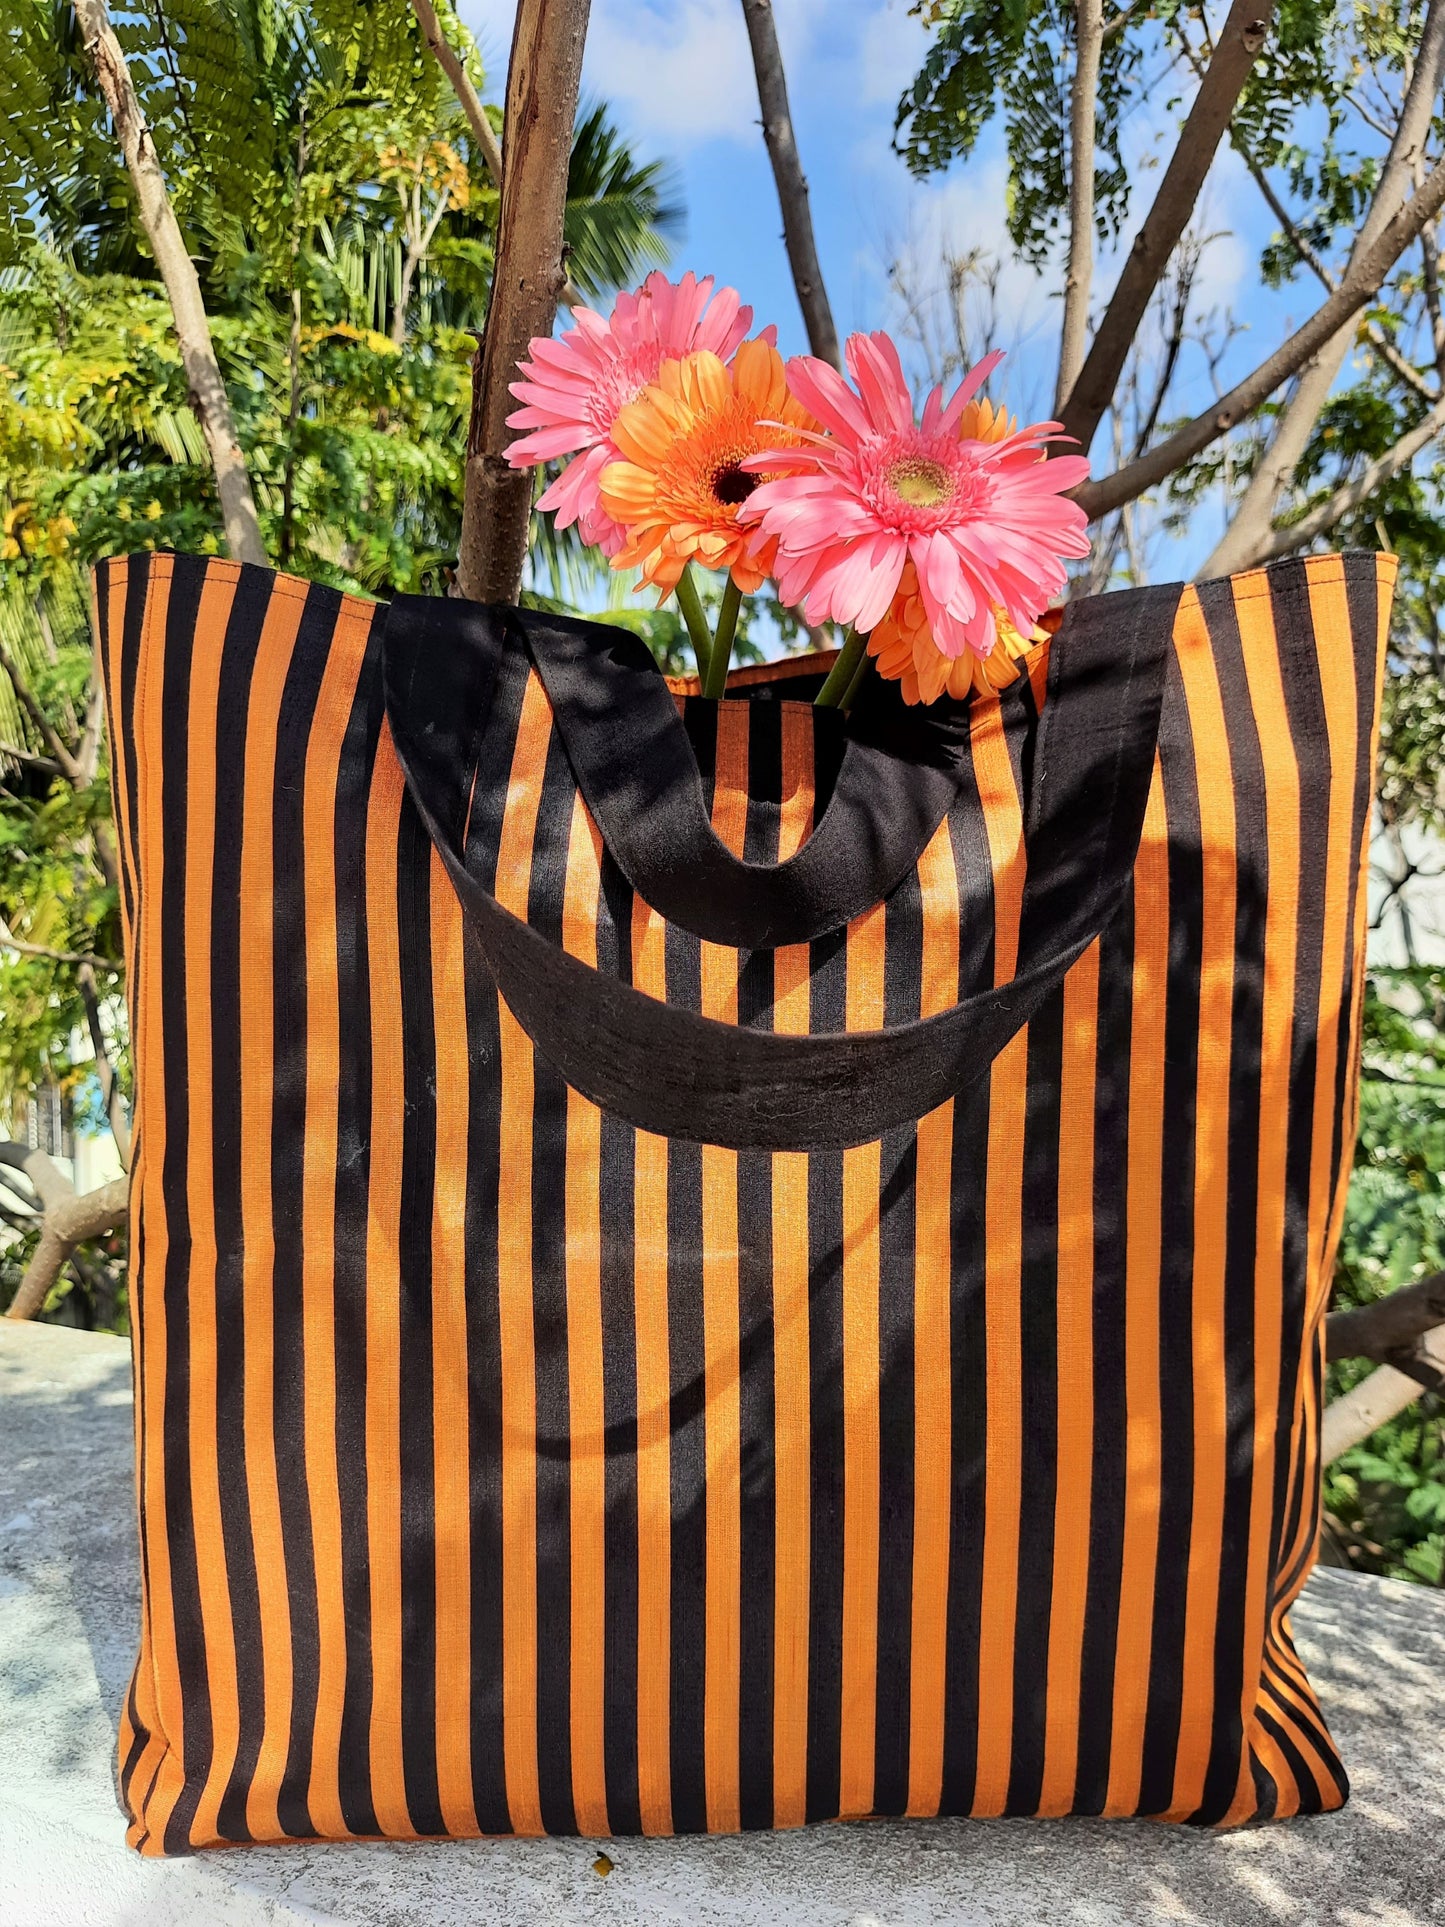 Striped jhola bag, upcycled striped jhola bag, handmade jhola bag, recycled jhola bag, Black & orange striped handbag, Fabric handbag, Jhola bag